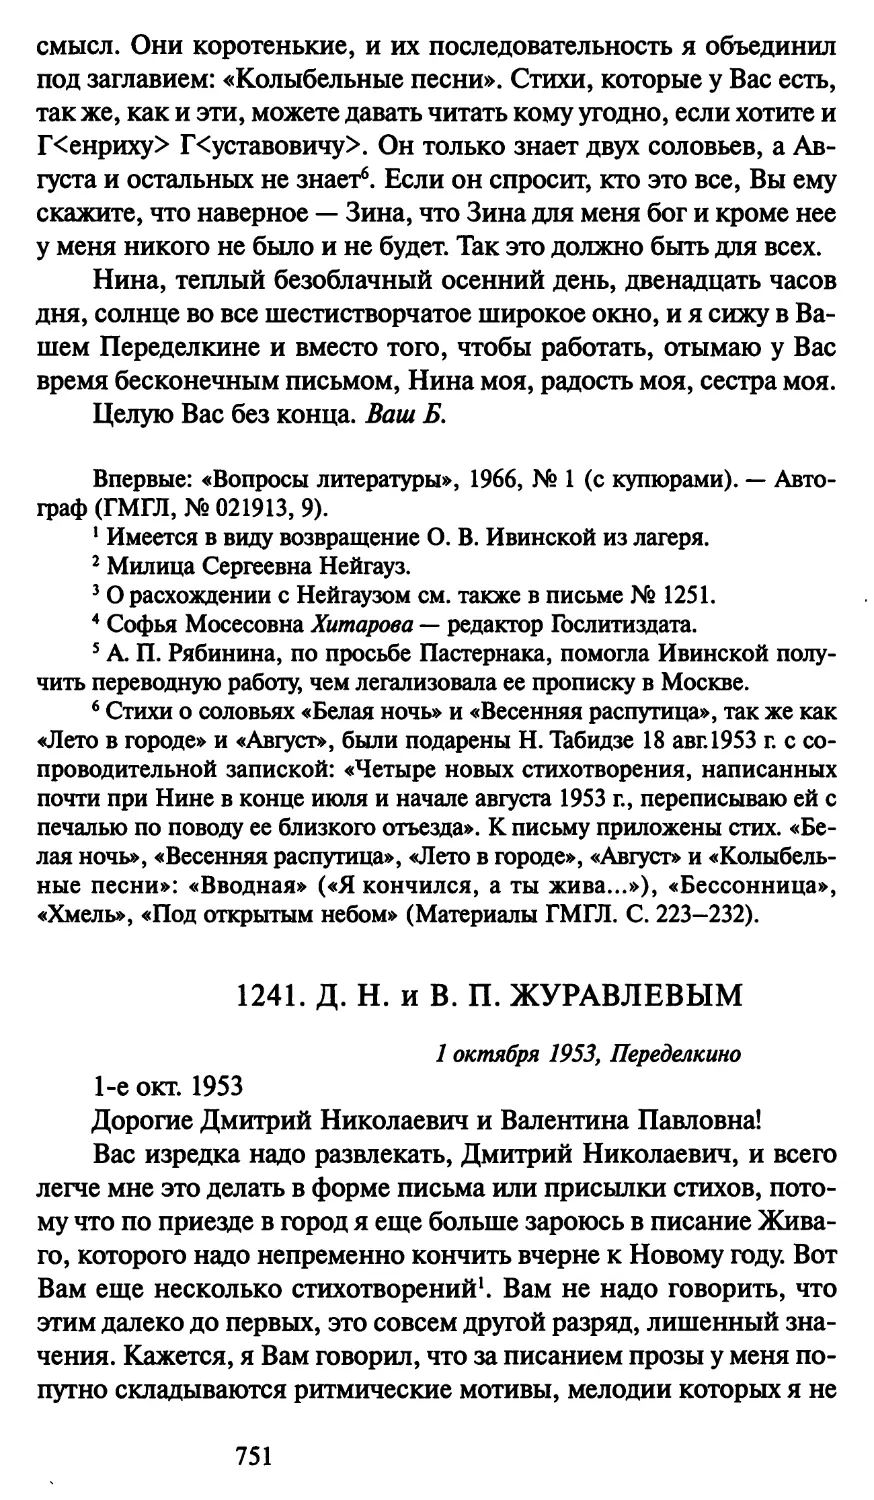 1241. Д. Н. и В. П. Журавлевым 1 октября 1953